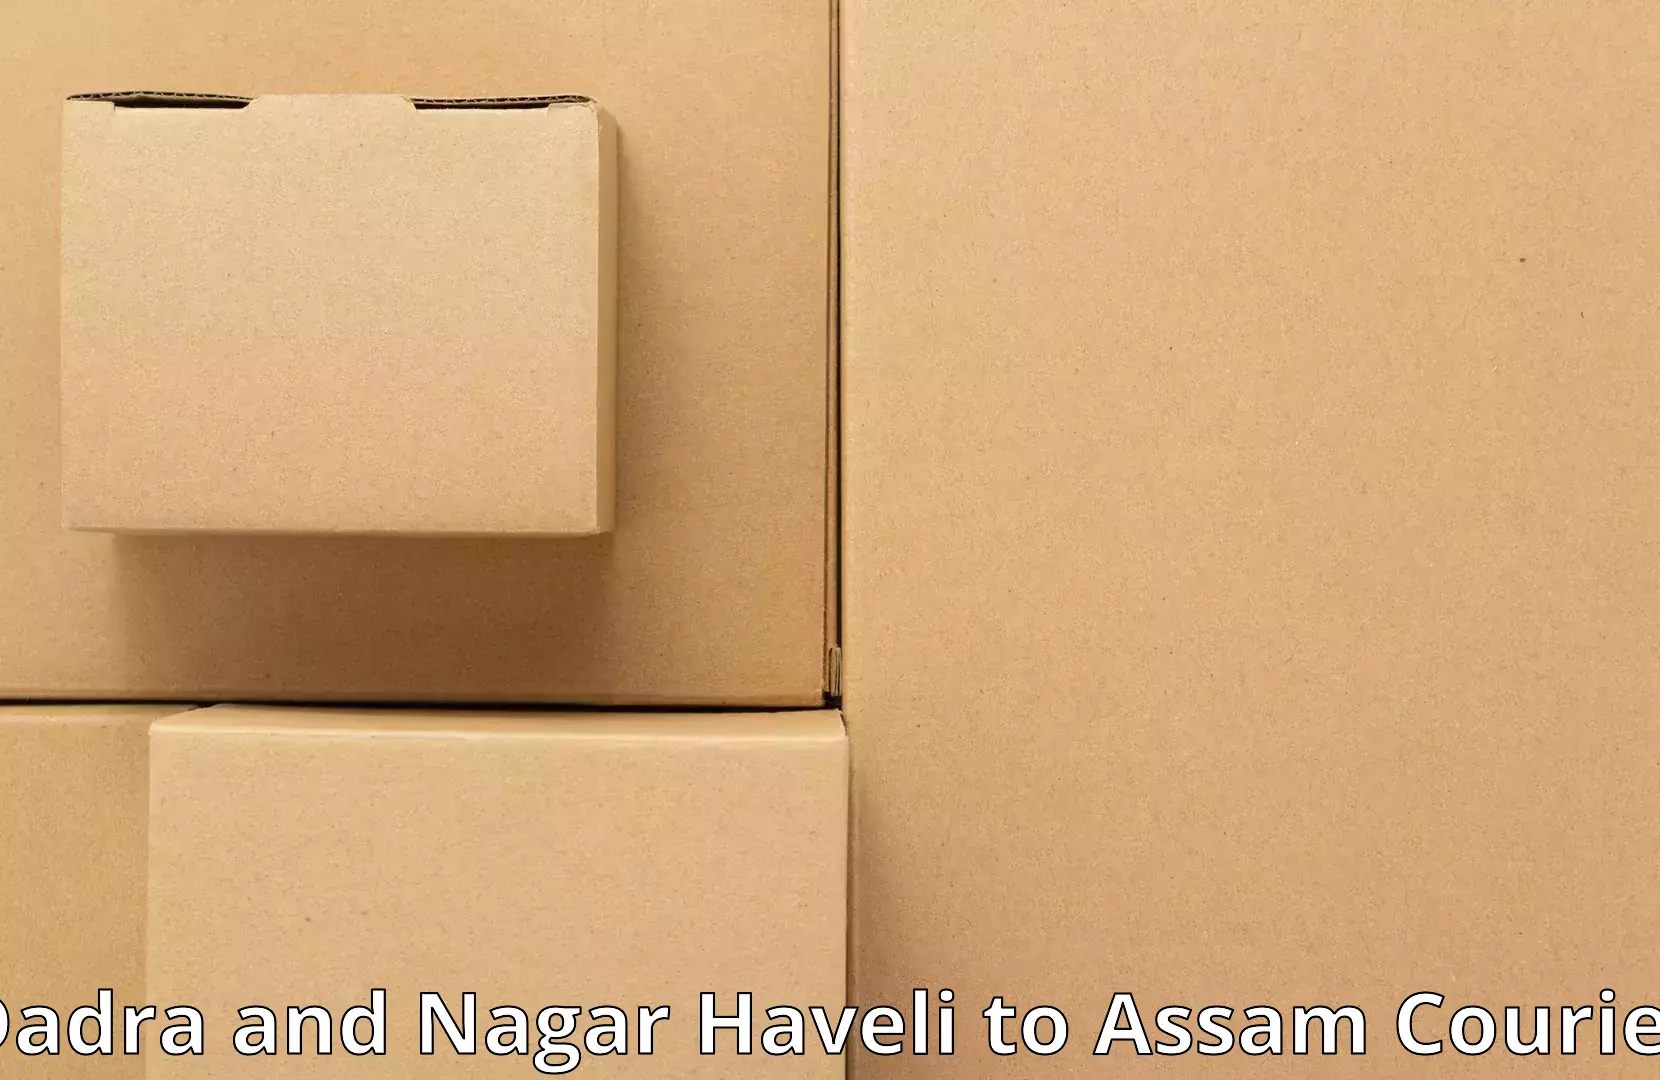 Furniture delivery service Dadra and Nagar Haveli to Puranigudam